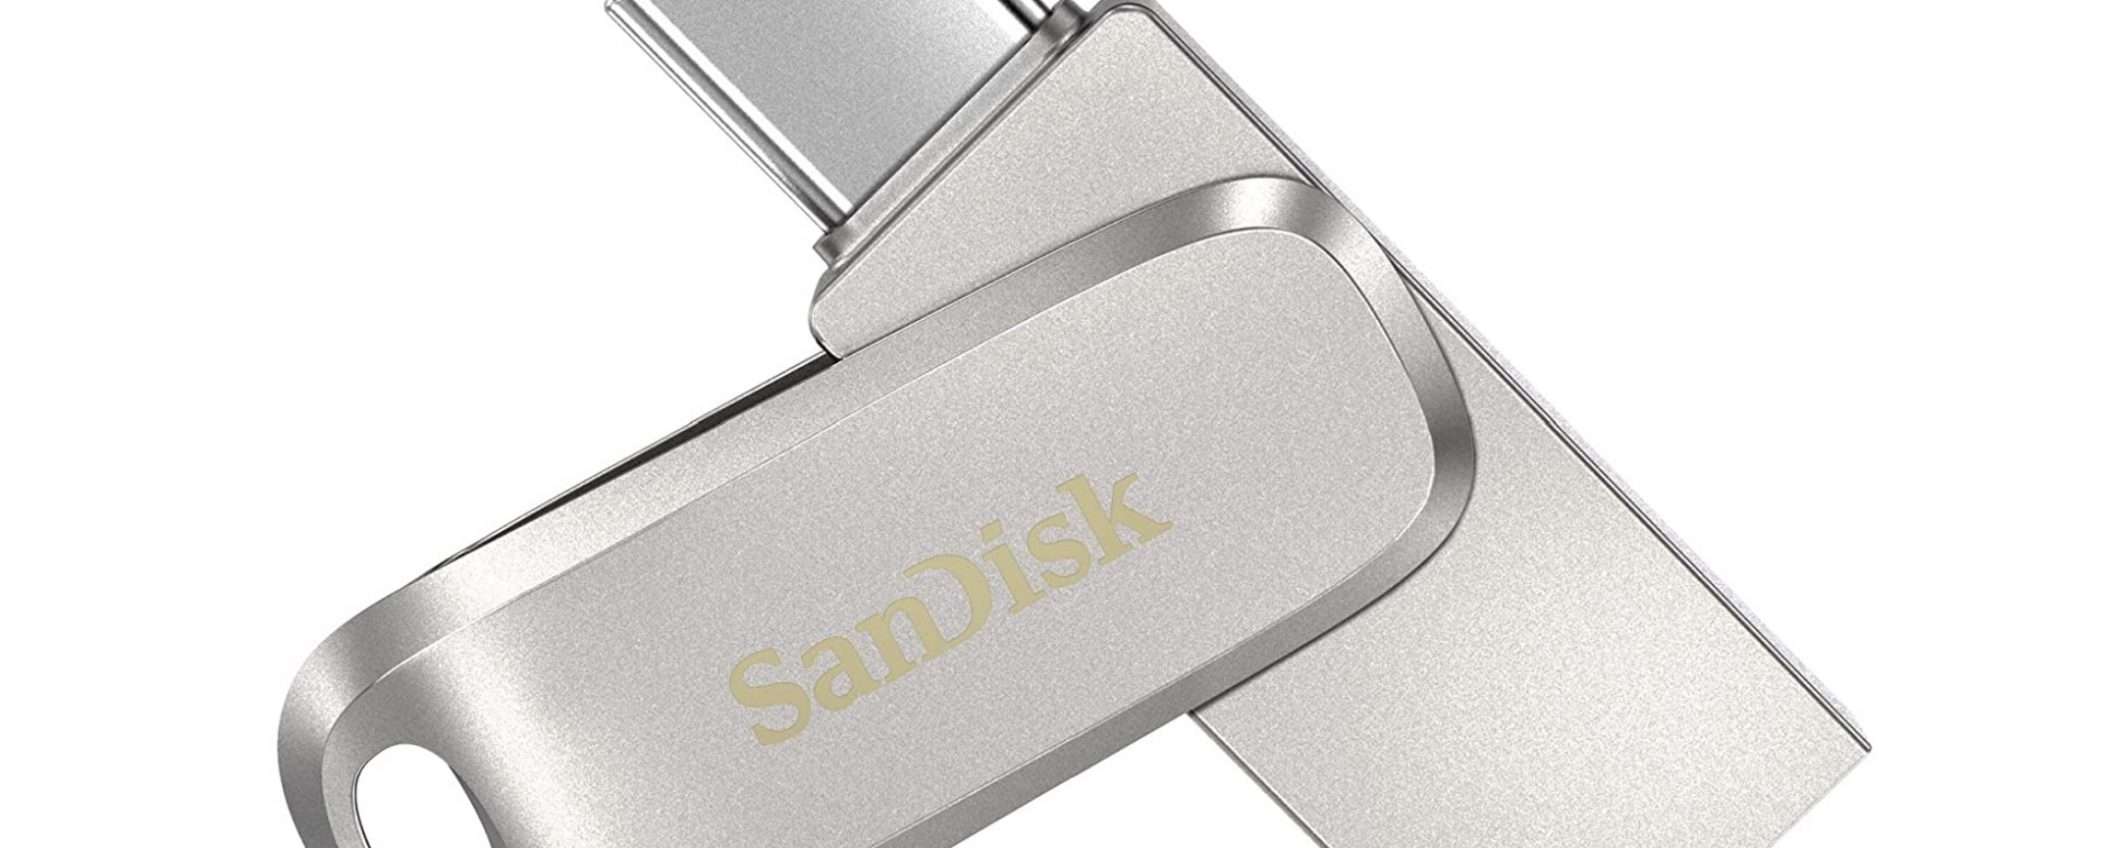 128GB di affidabilità per le vacanze con la pendrive USB-C di SanDisk